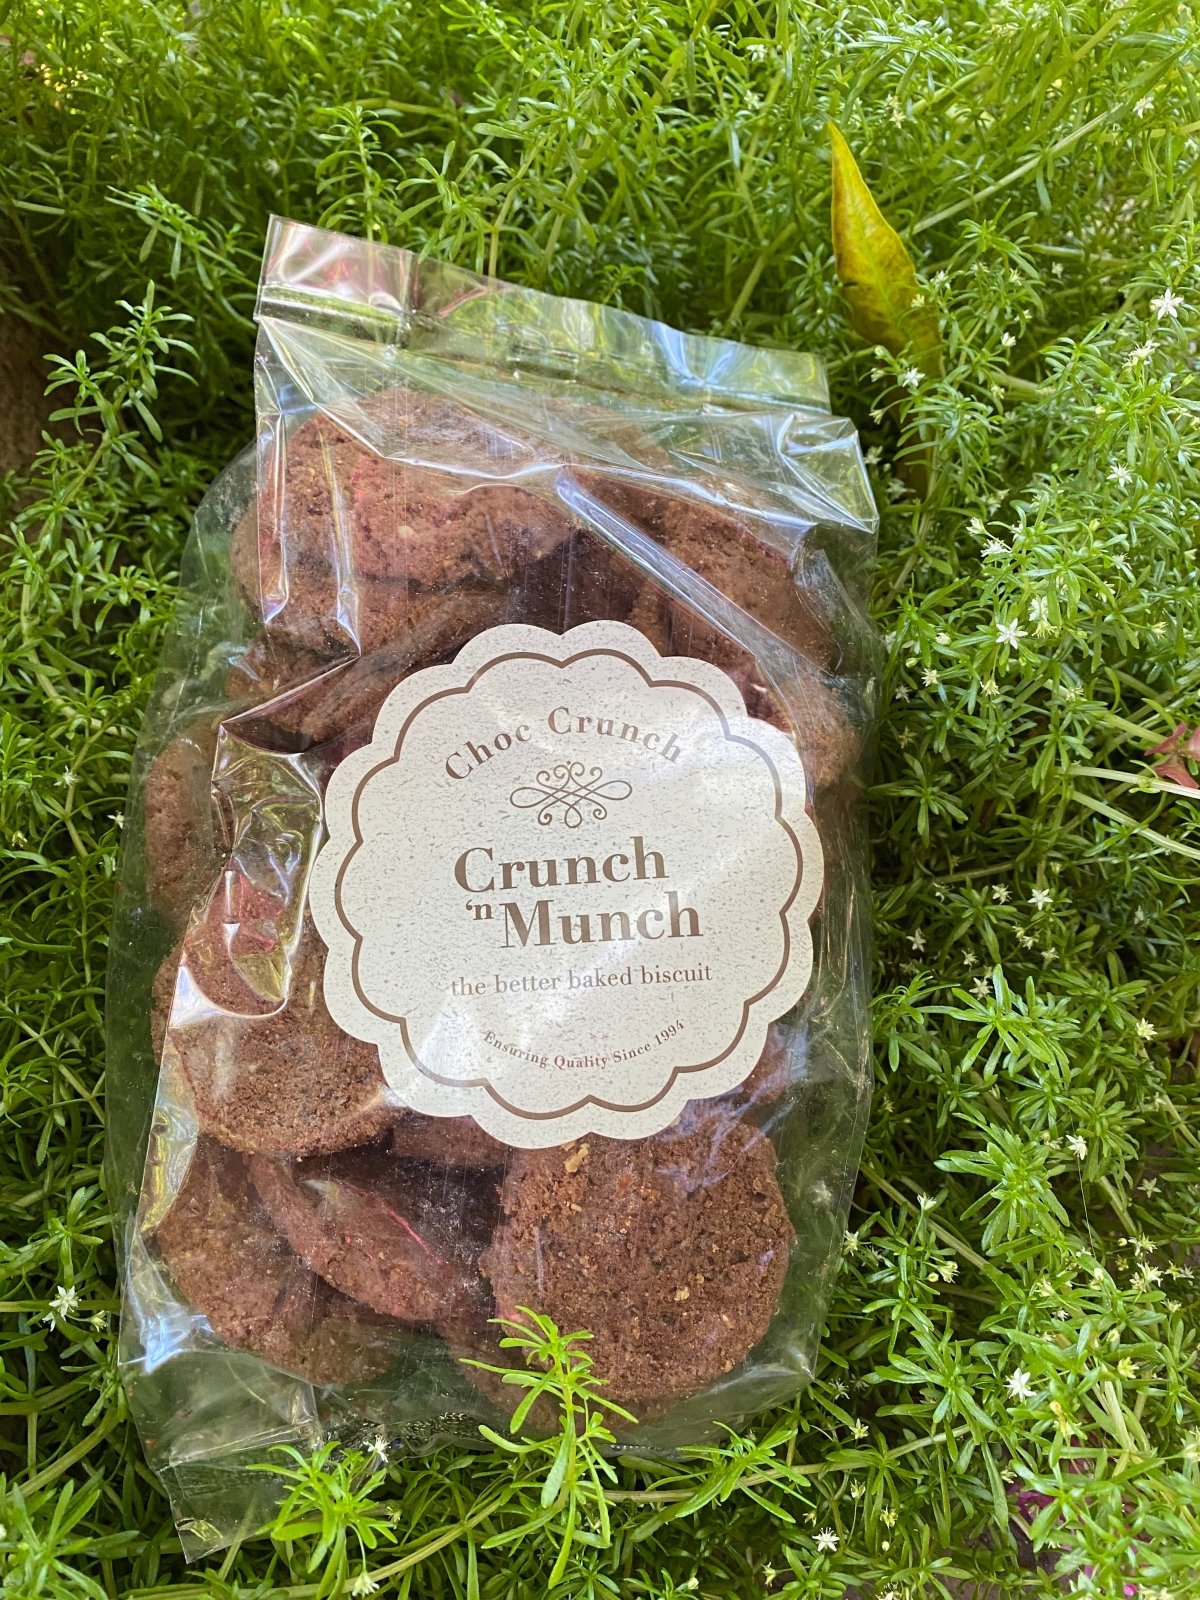 Crunch 'n Munch - Choc Crunch Biscuits (400g) - The Deli